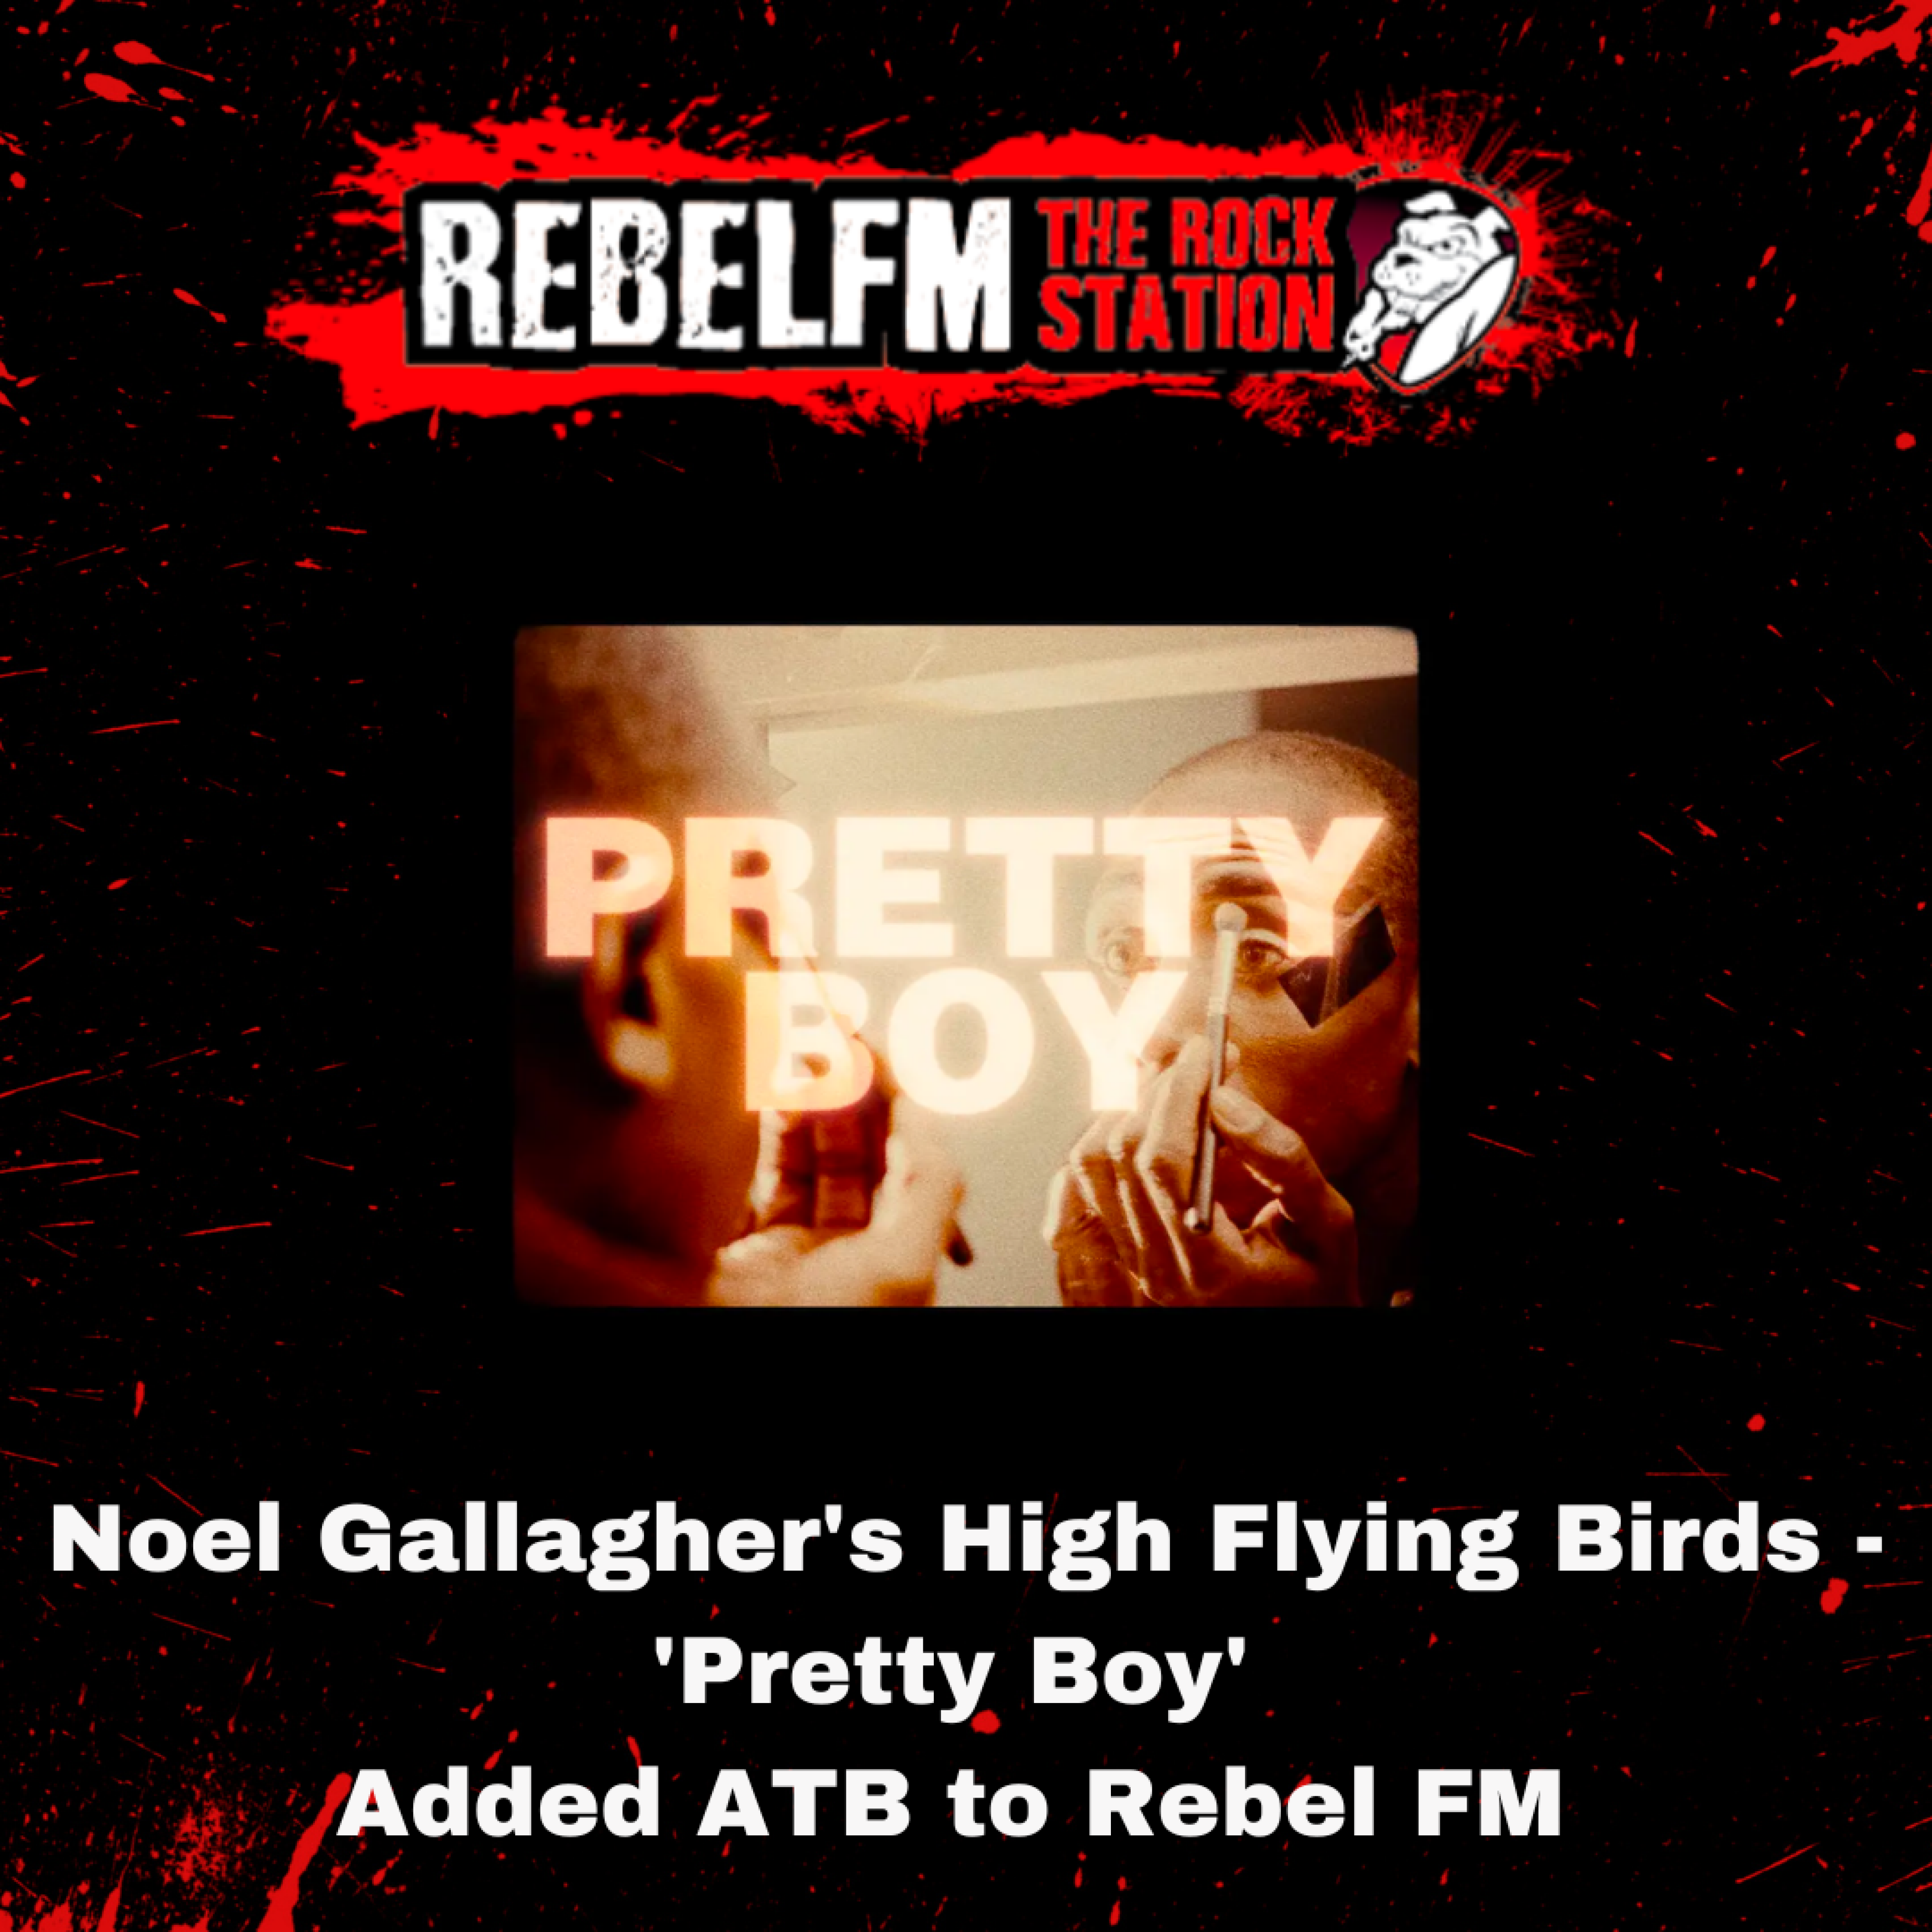 Noel Gallagher's High Flying Birds - 'Pretty Boy' added ATB to Rebel FM